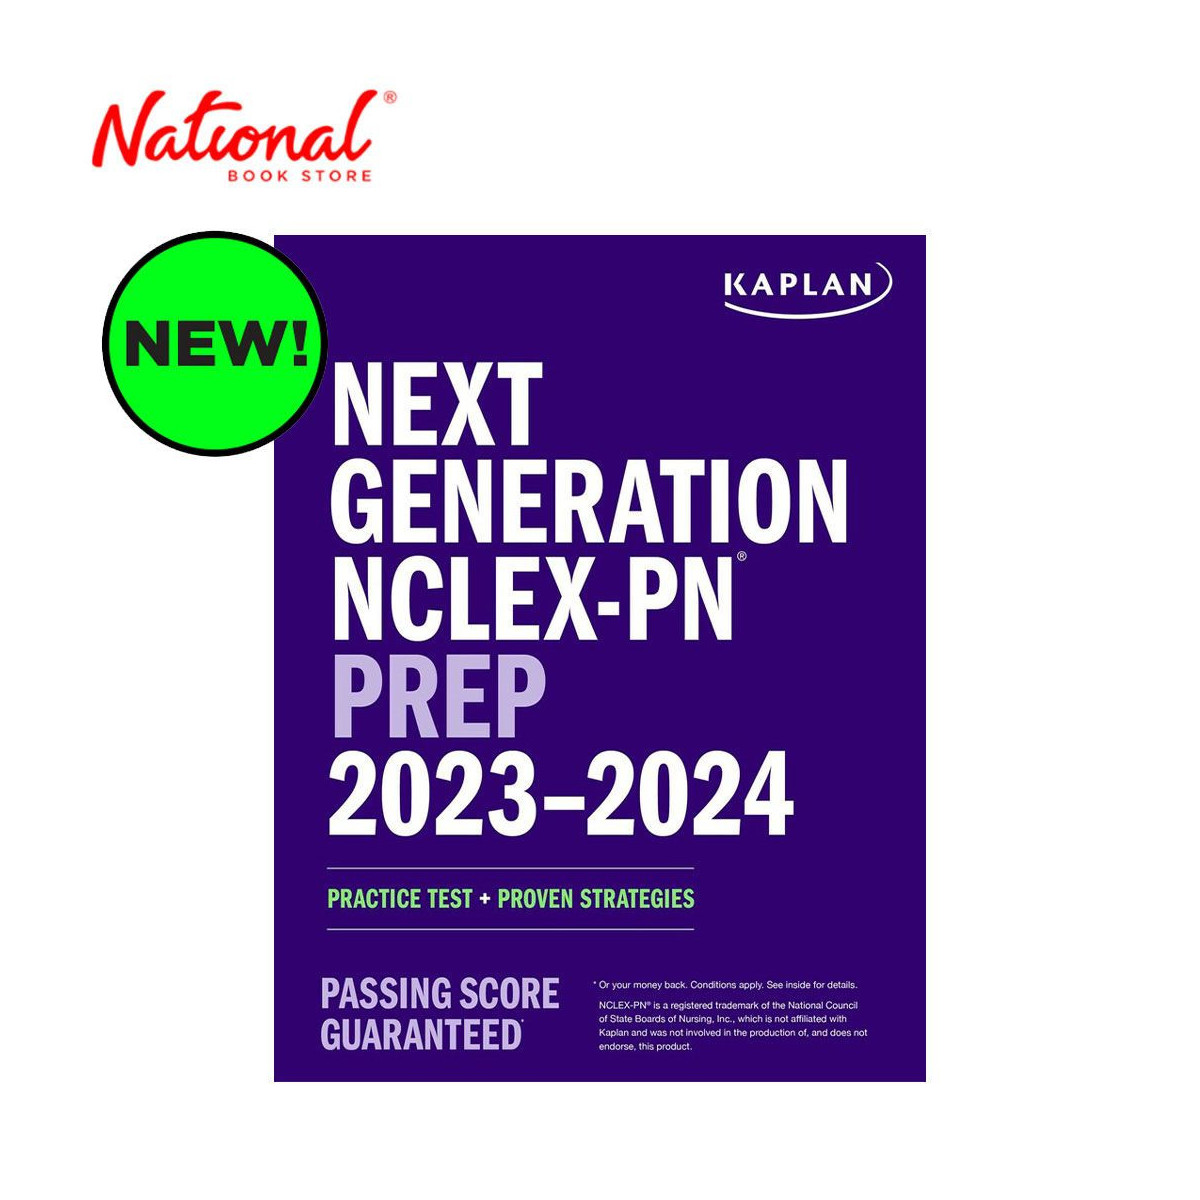 Next Generation NCLEX-PN Prep 2023-2024 by Kaplan Nursing - Trade Paperback - Reviewer